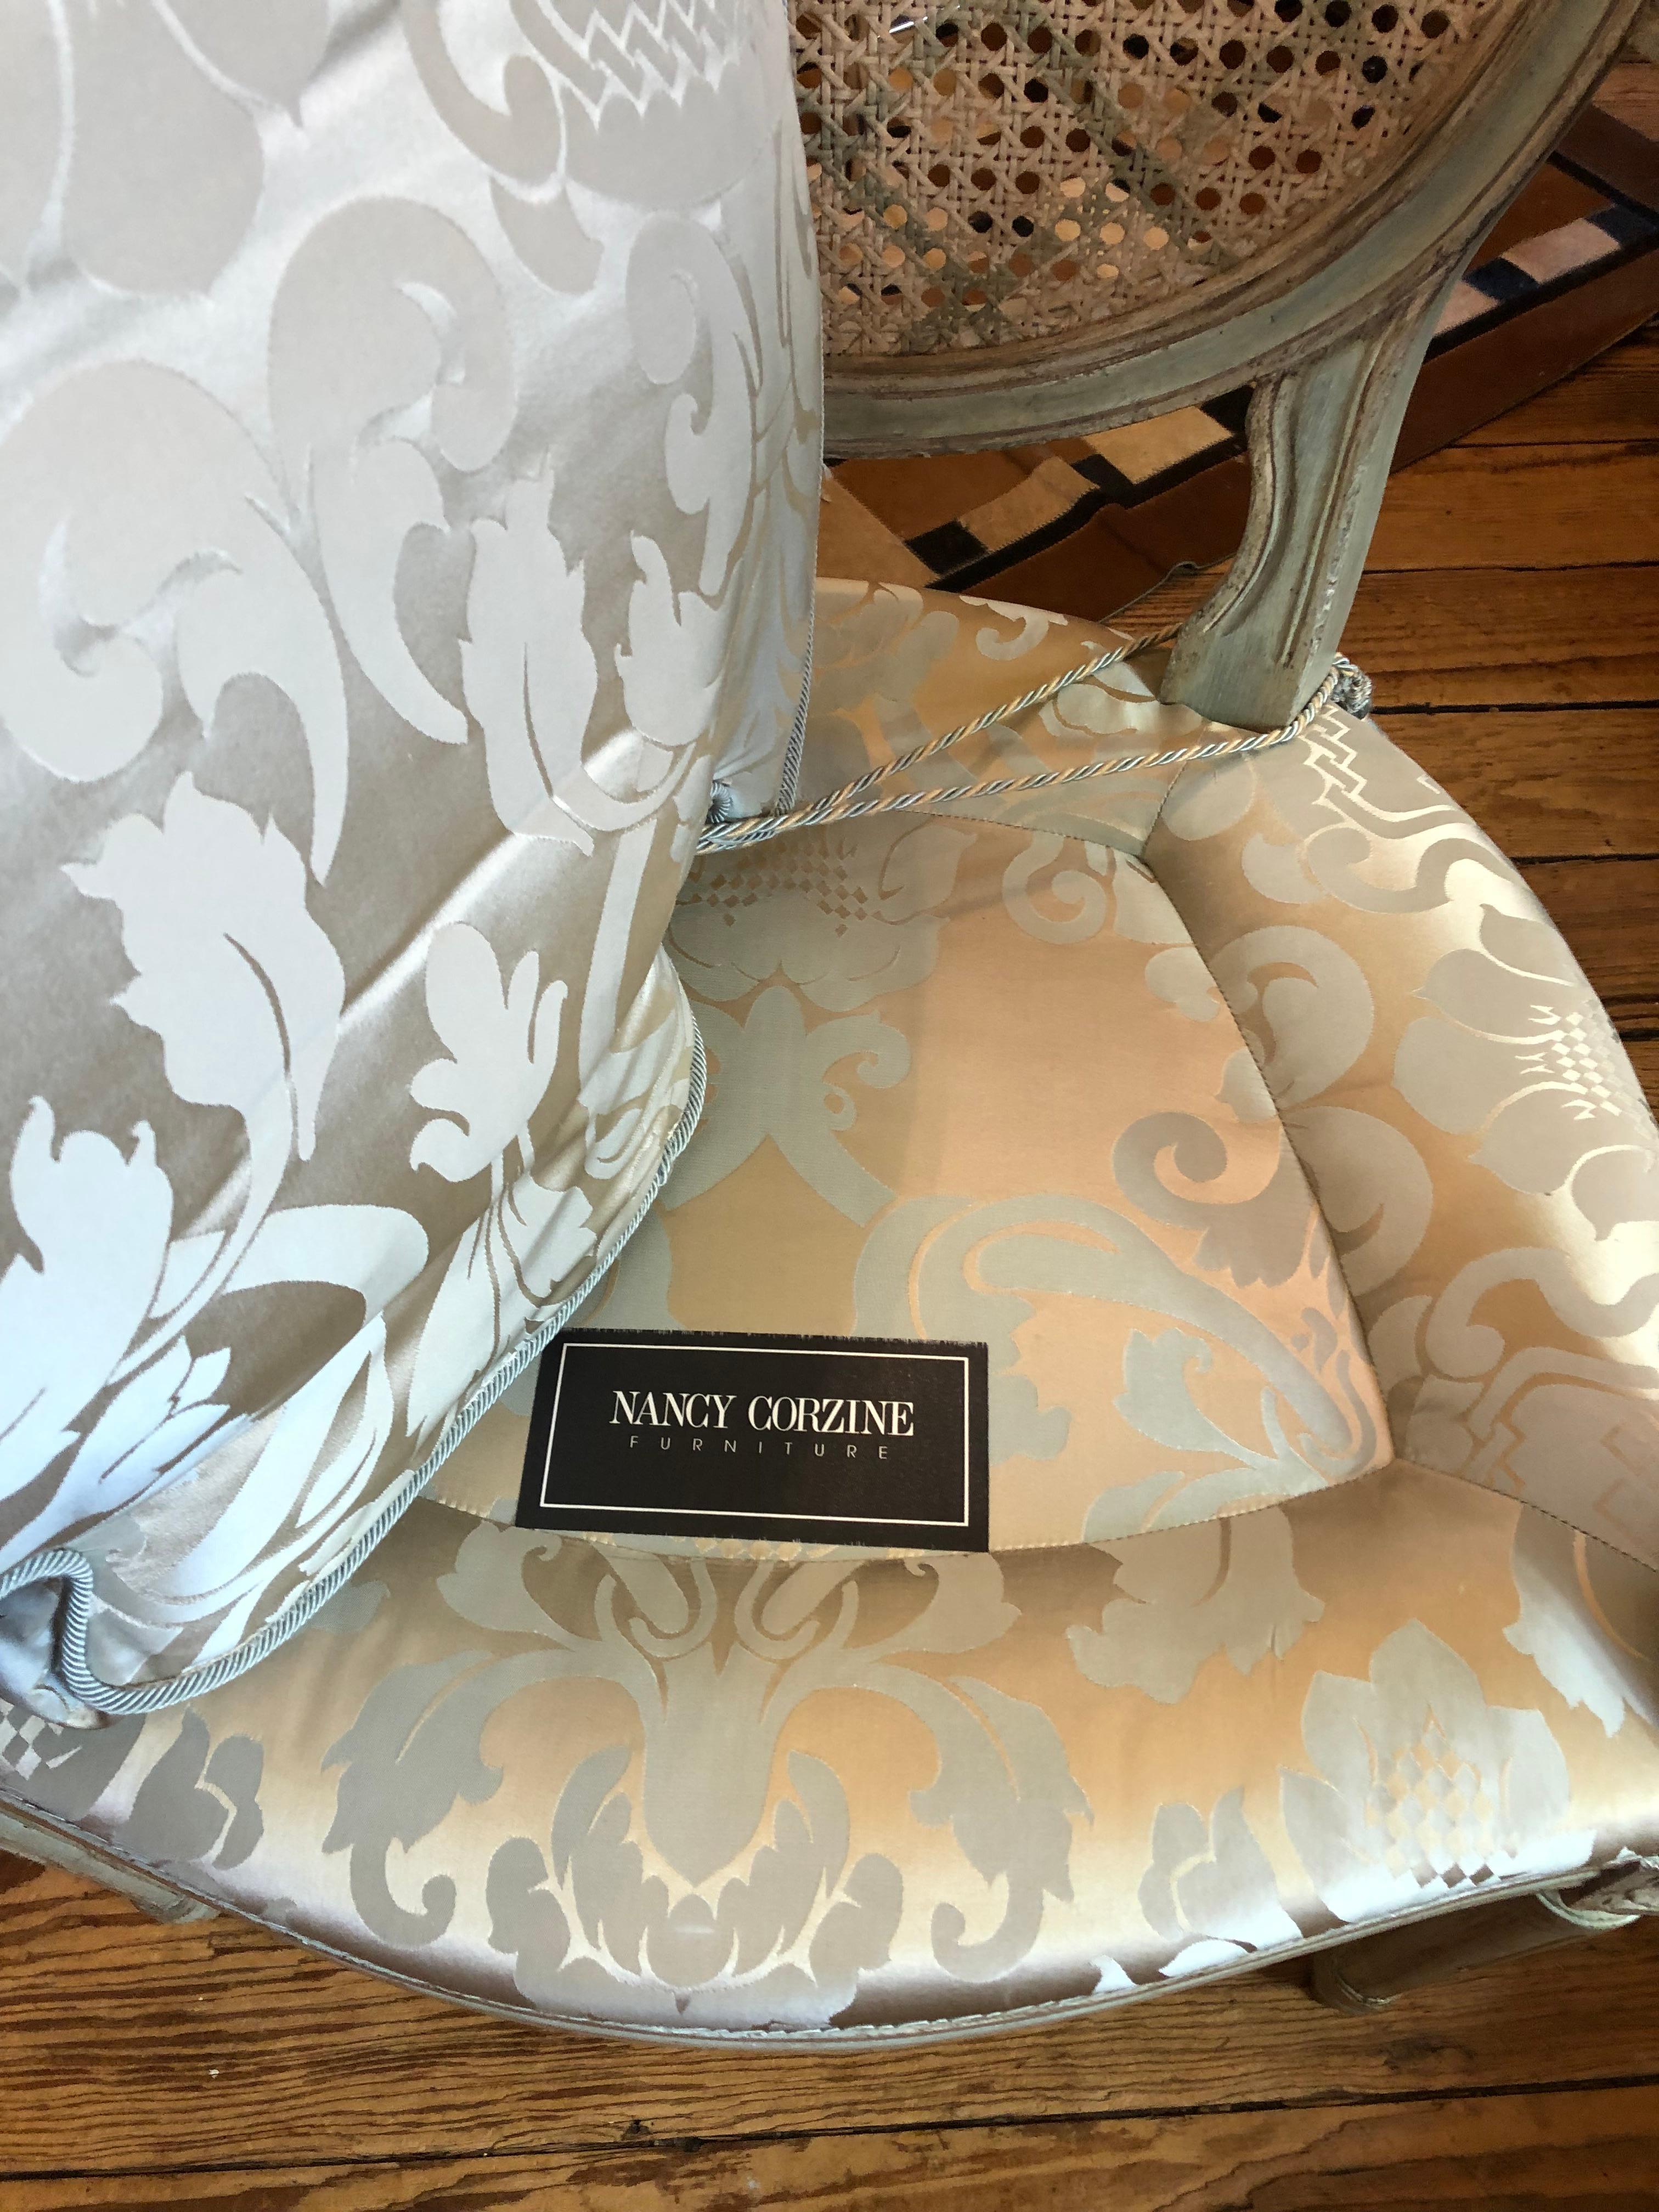 Sumptuous Nancy Corzine Celadon Painted Silver Gilt Armchair 5